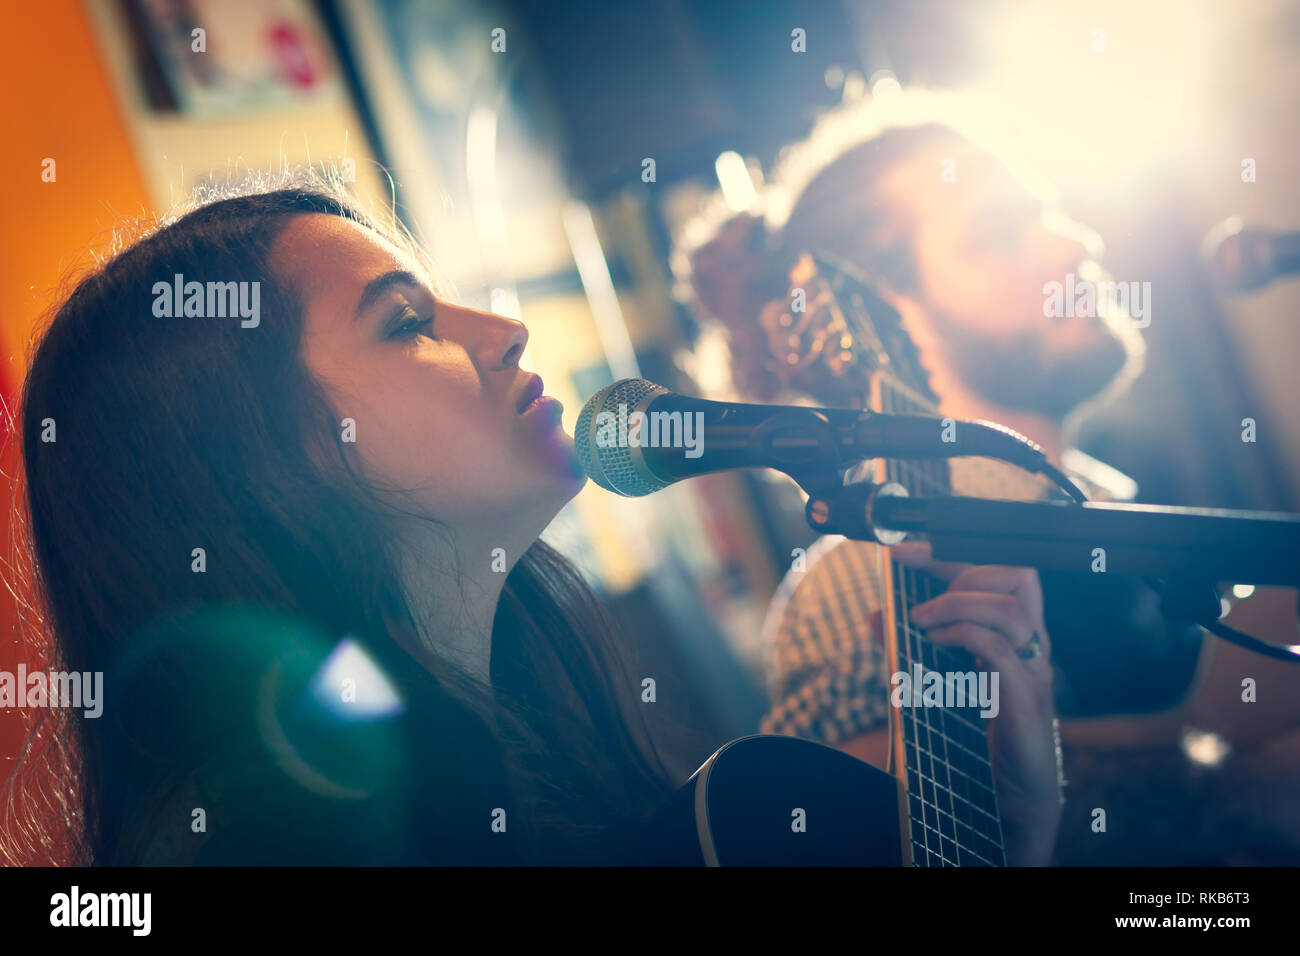 Duett von Gitarristen während eine musikalische Aufführung singen. Hintergrundbeleuchtung mit Flair. Stockfoto